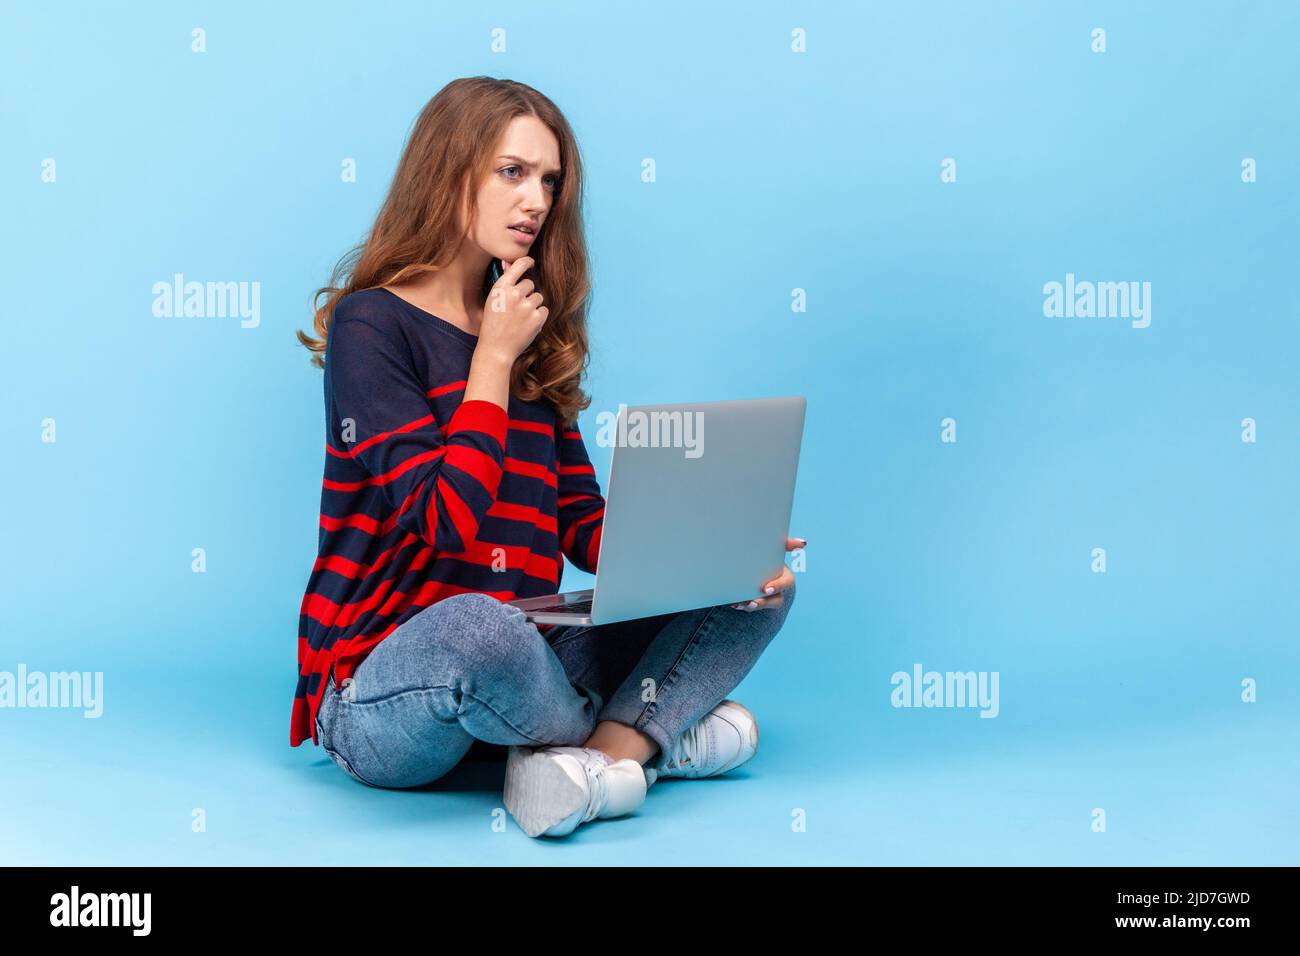 Nachdenkliche Frau mit gestreiftem Pullover im lässigen Stil, sitzend mit gekreuzten Beinen, Laptop auf den Knien haltend, online arbeitend, nachdenklich ausdruckend. Innenaufnahme des Studios isoliert auf blauem Hintergrund. Stockfoto